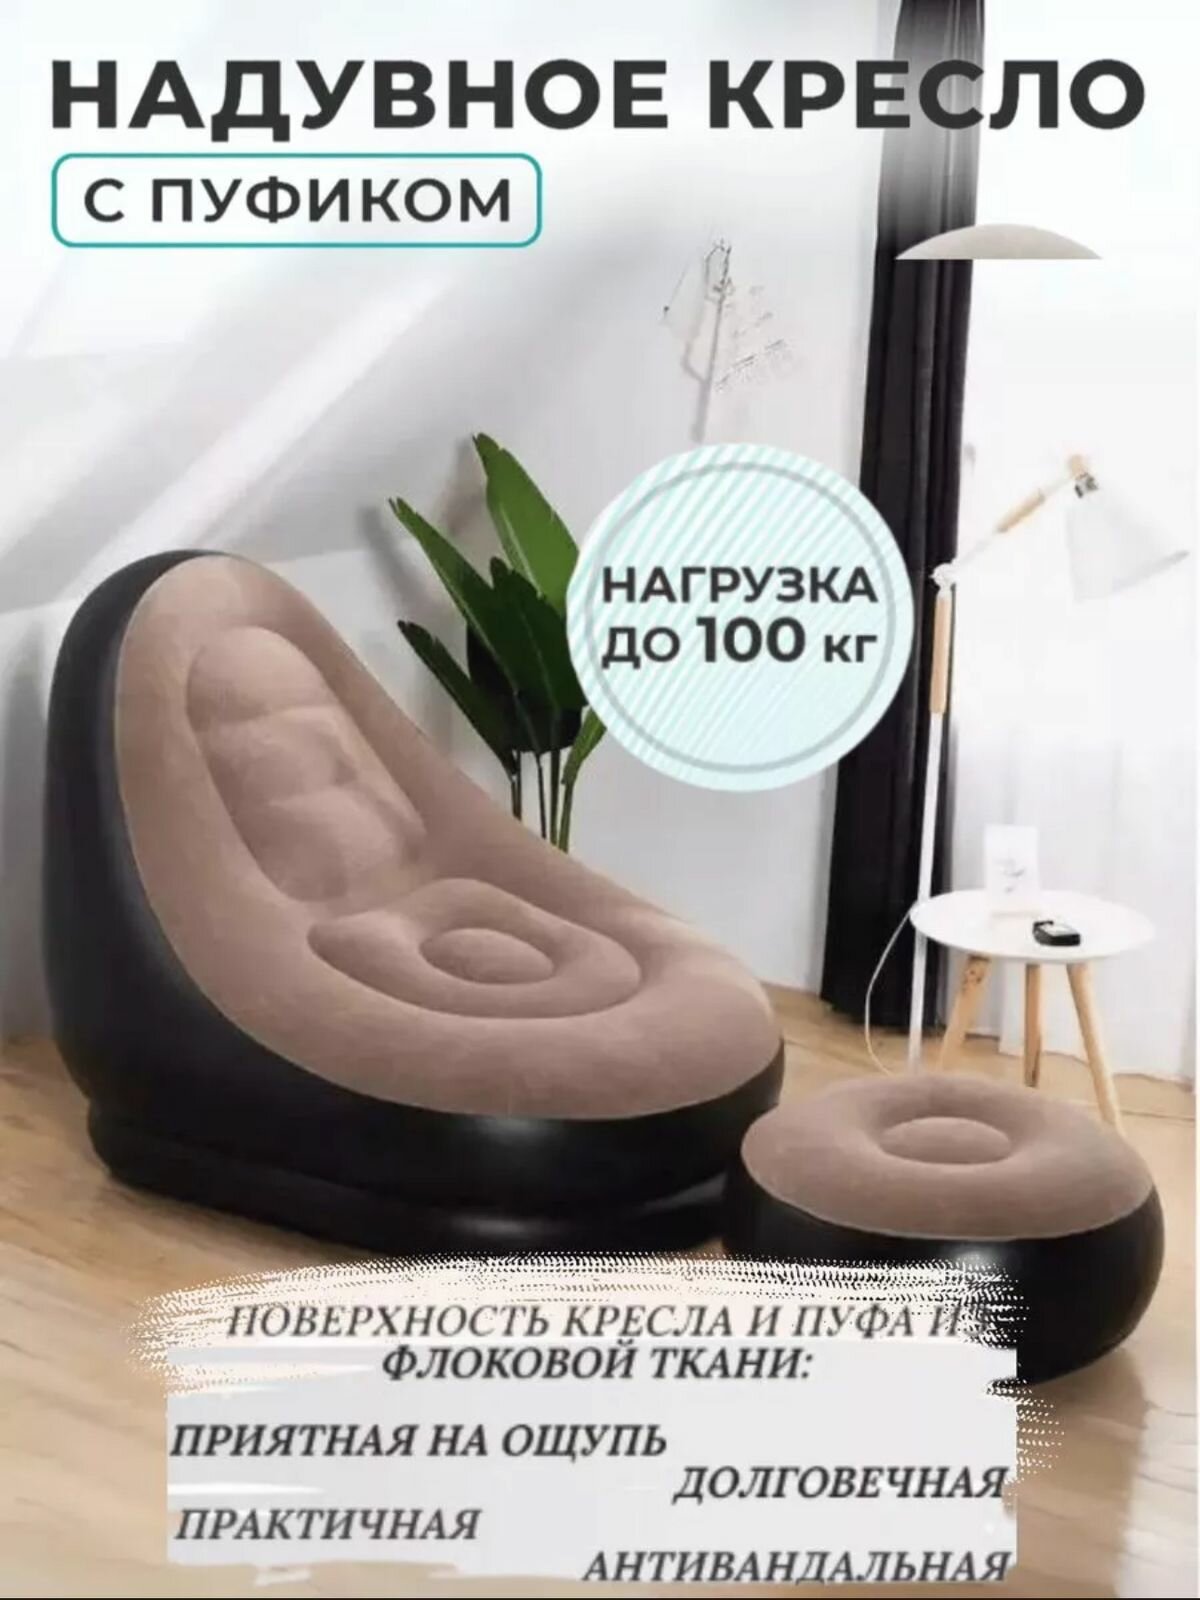 Надувное кресло с пуфом, матрас надувной для отдыха с пуфиком